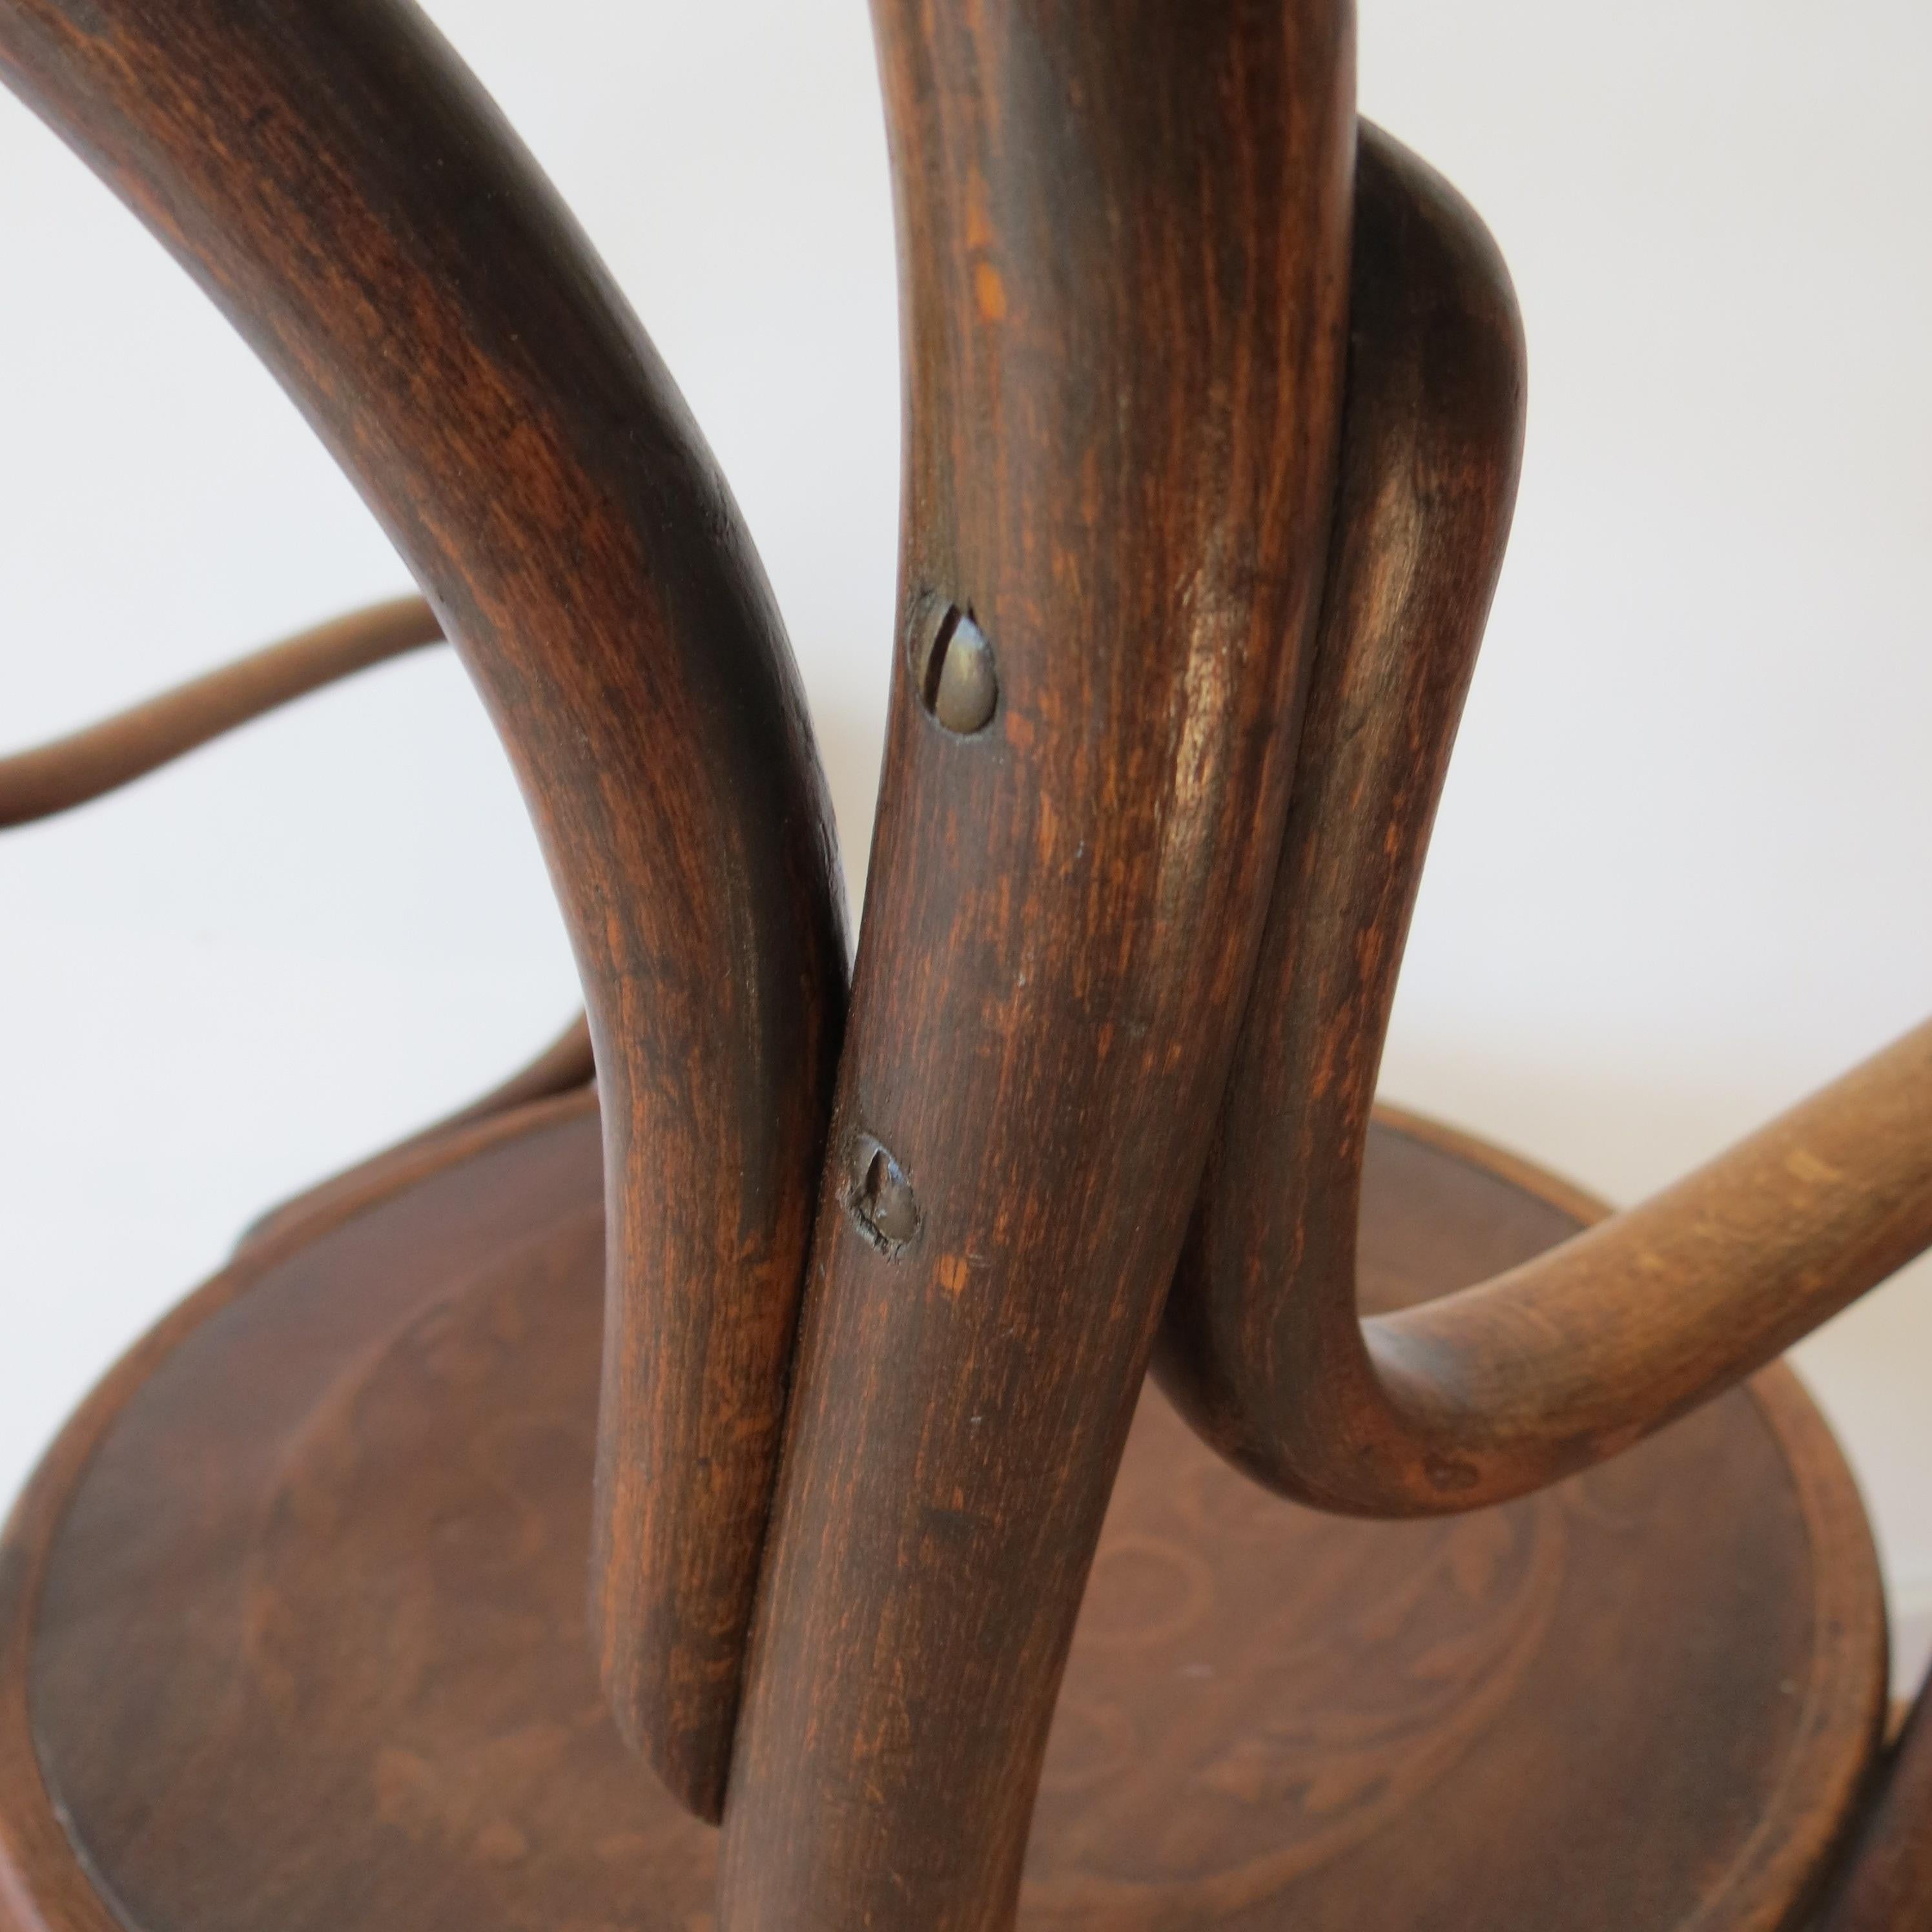 Antique Bentwood Chair No 14 by Thonet 19th Century Art Nouveau 1